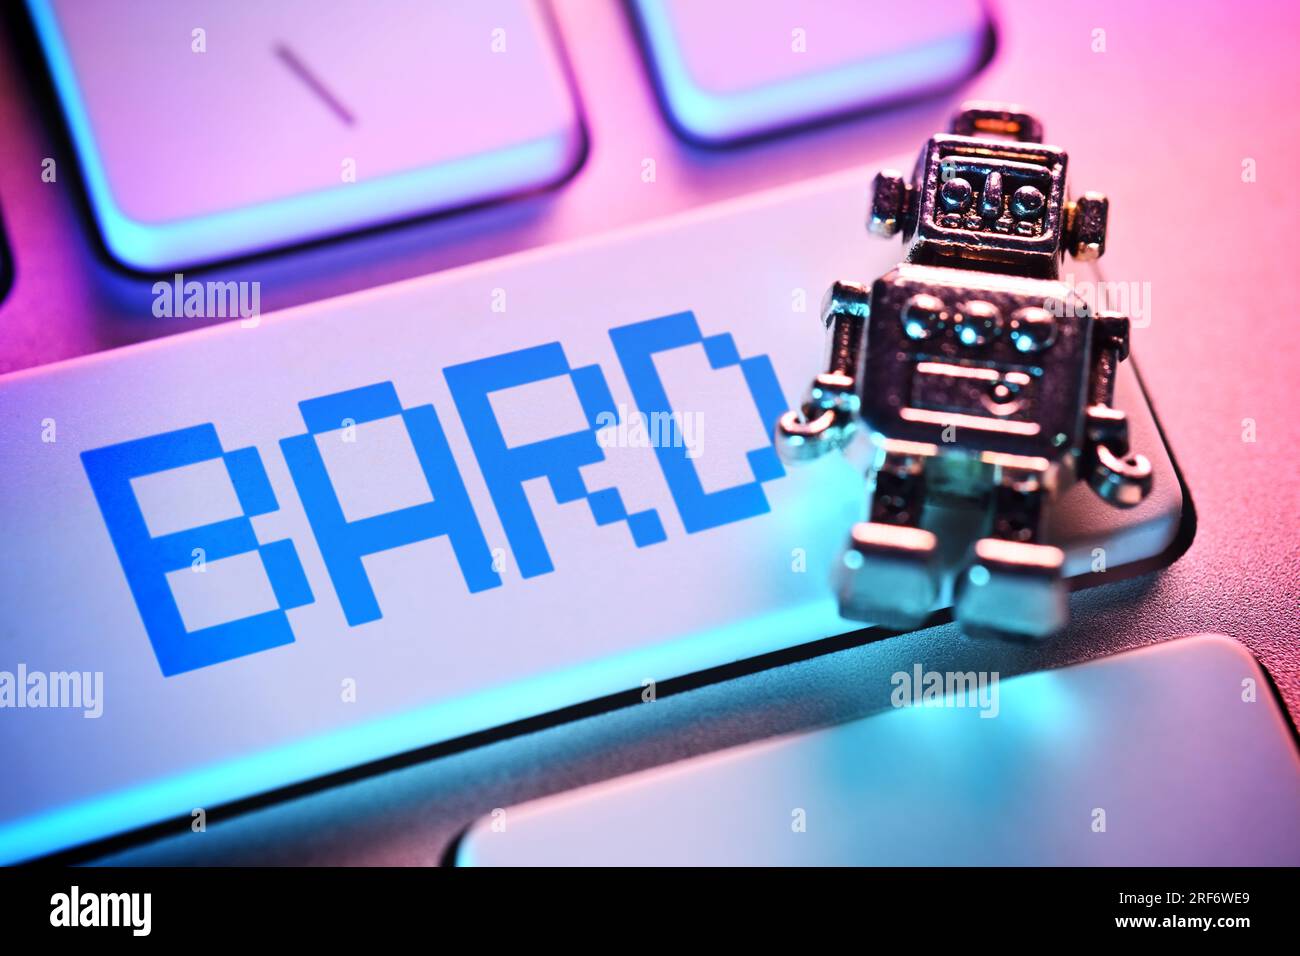 FOTOMONTAGE, Miniatur-Roboter auf einer Computertaste mit der Aufschrift Bard, Google-KI Stock Photo